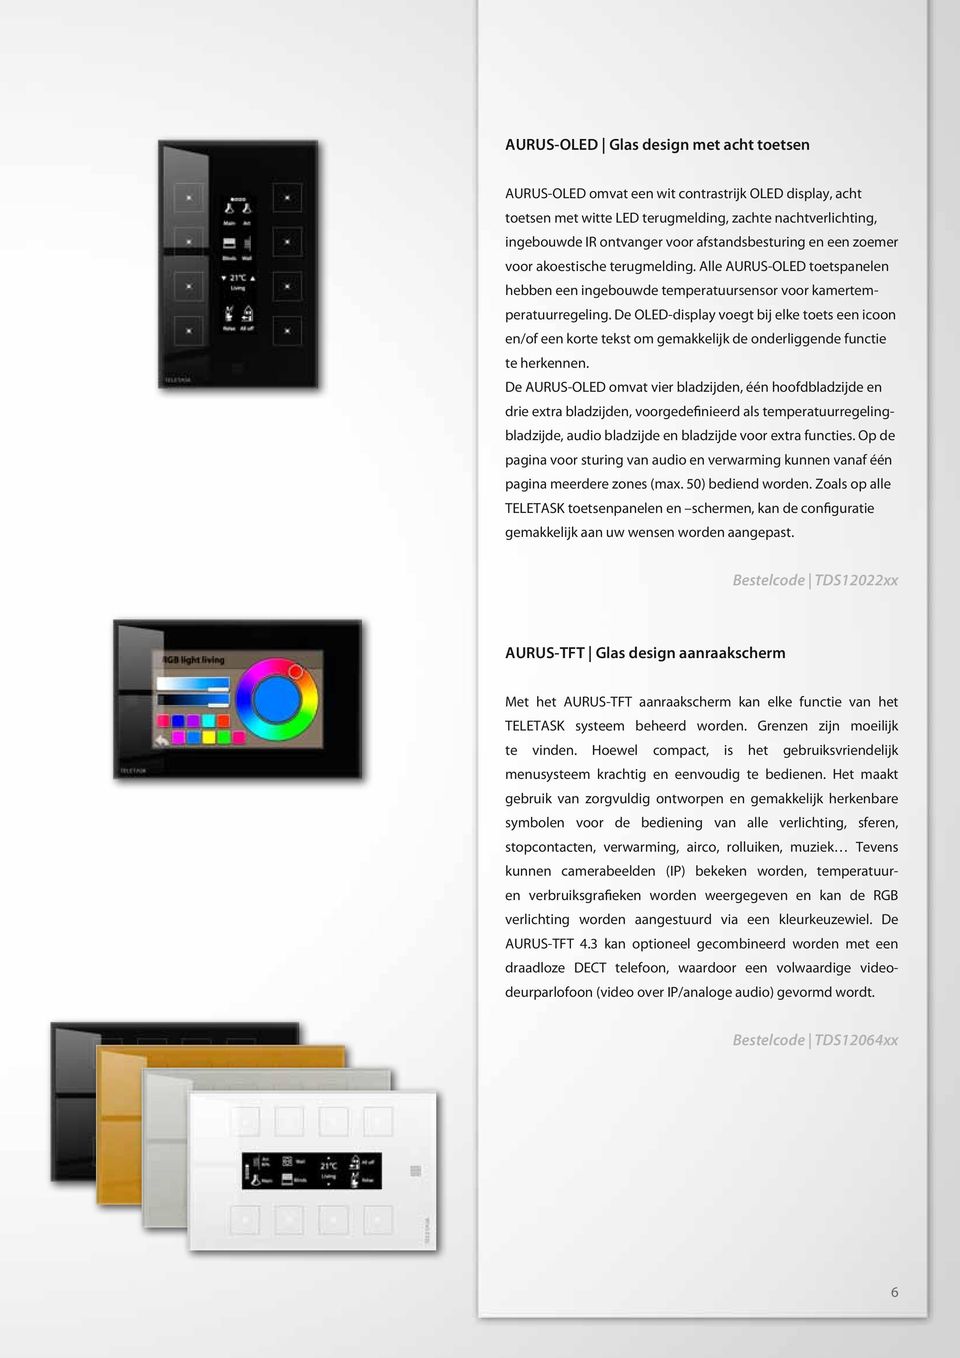 De OLED-display voegt bij elke toets een icoon en/of een korte tekst om gemakkelijk de onderliggende functie te herkennen.